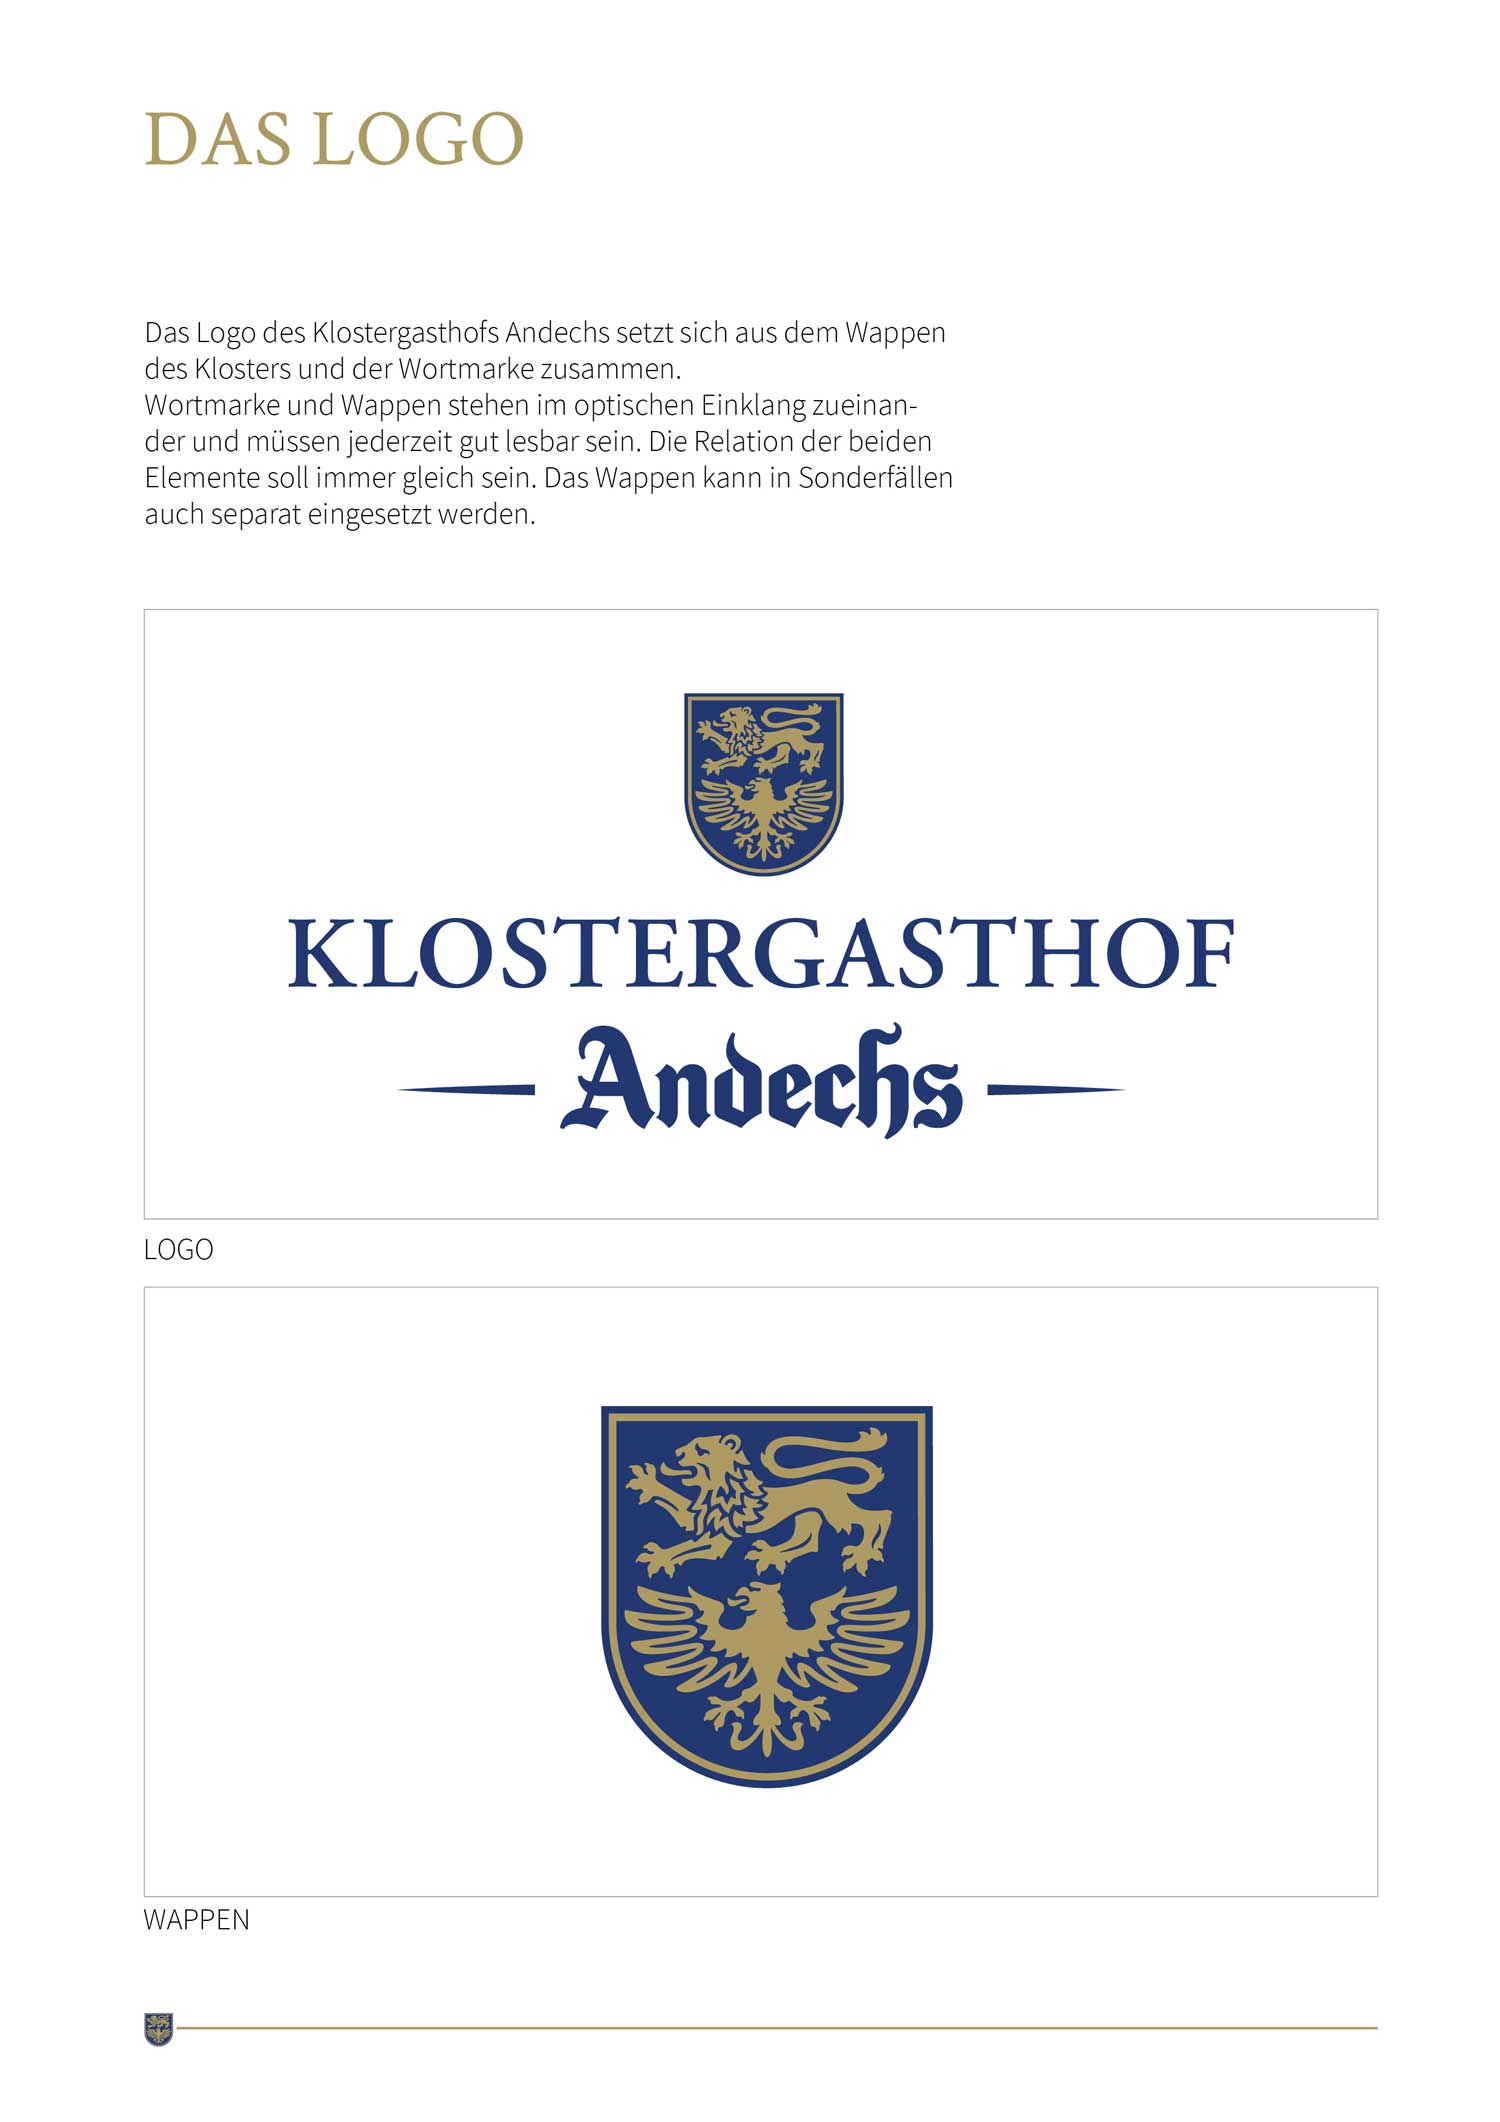 Case Klostergasthof Andechs Mockup Design Manual